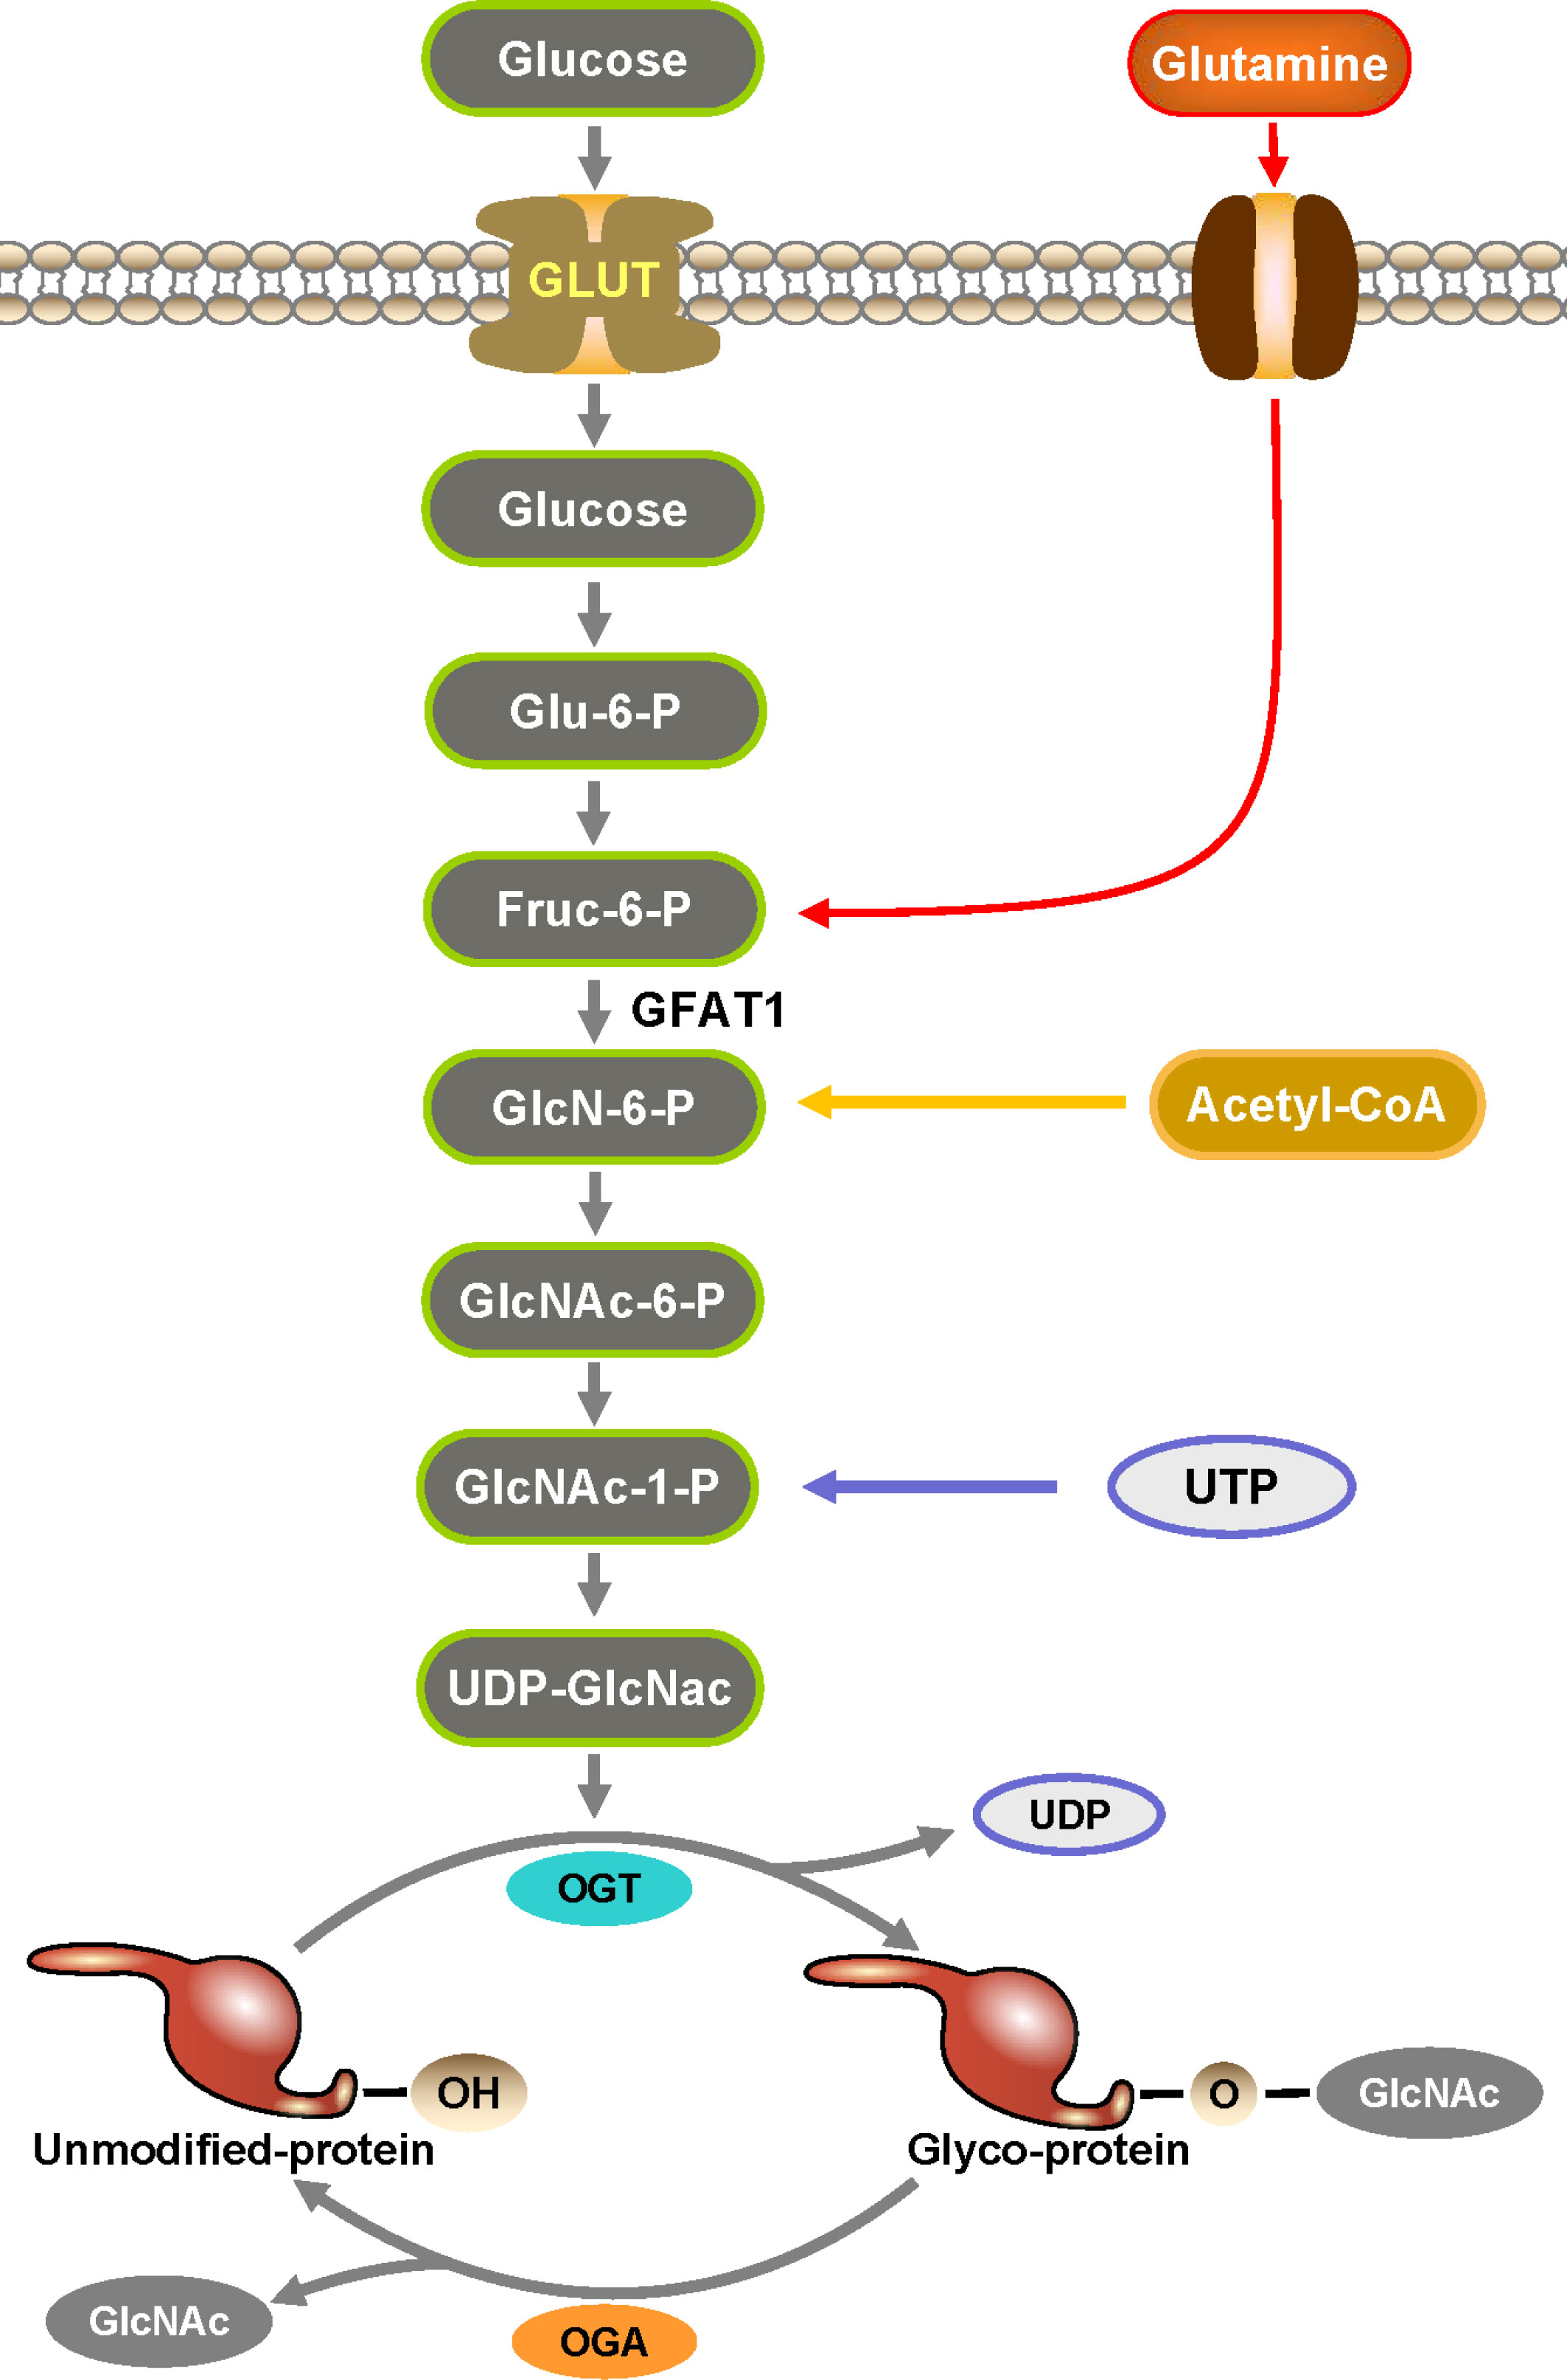 Pharmacological Inhibition of O-GlcNAcase Enhances Autophagy in